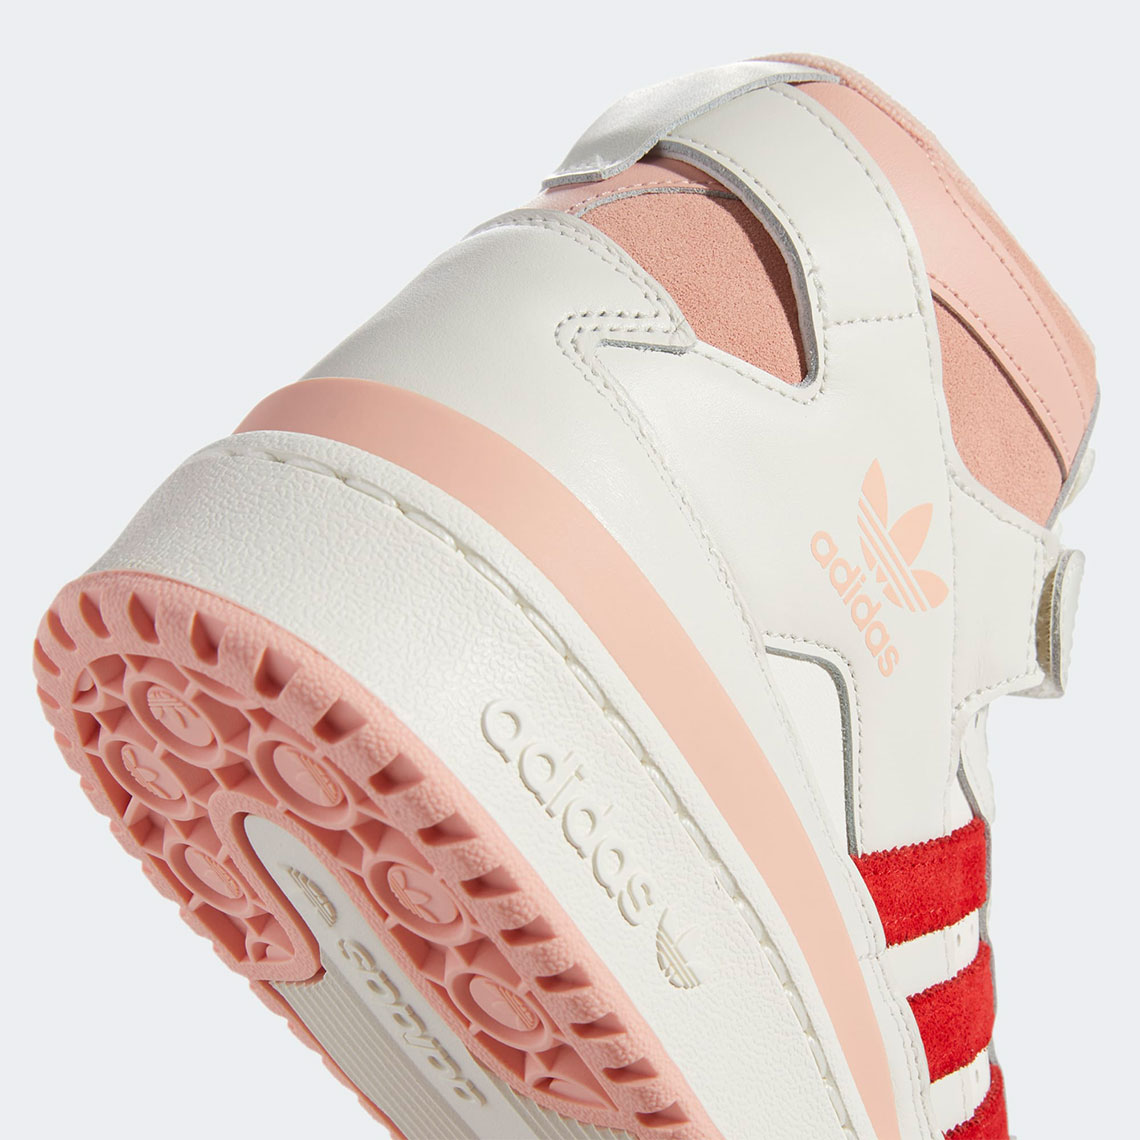 Adidas Forum 84 Hi Off White Pink Glow Vivid Red H01670 7